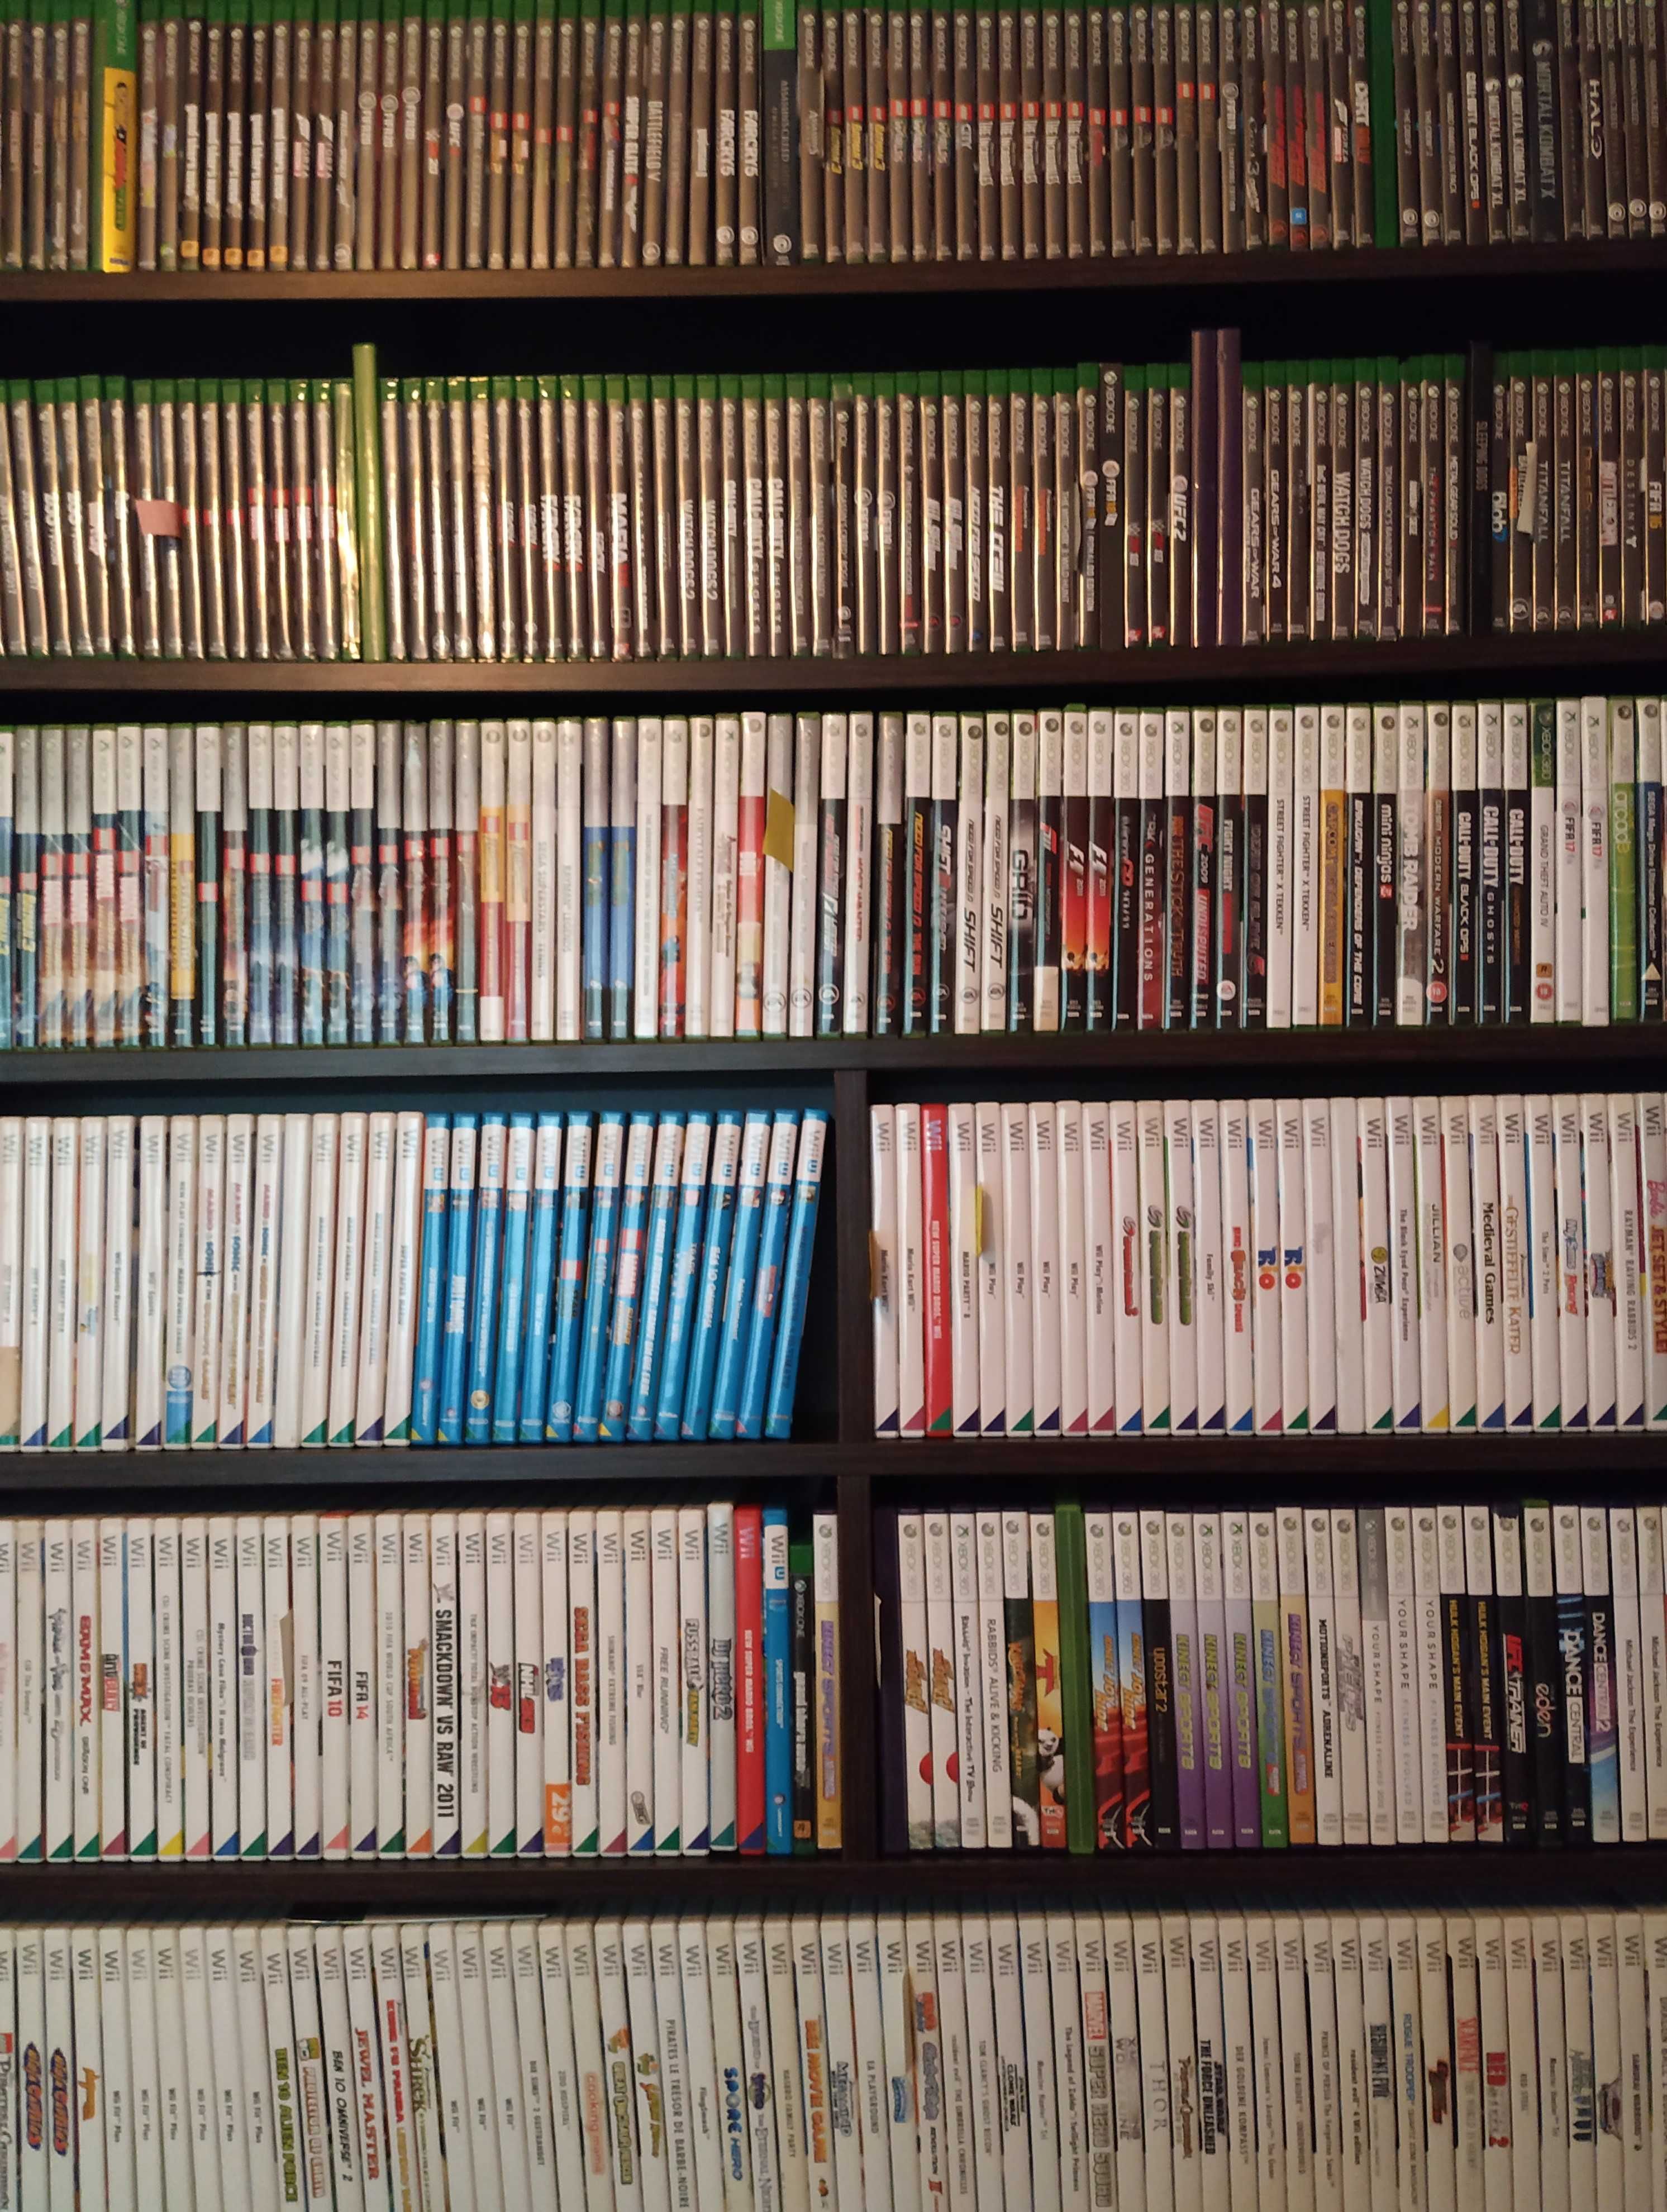 Wii full box cu toate accesoriile originale si jocuri incluse